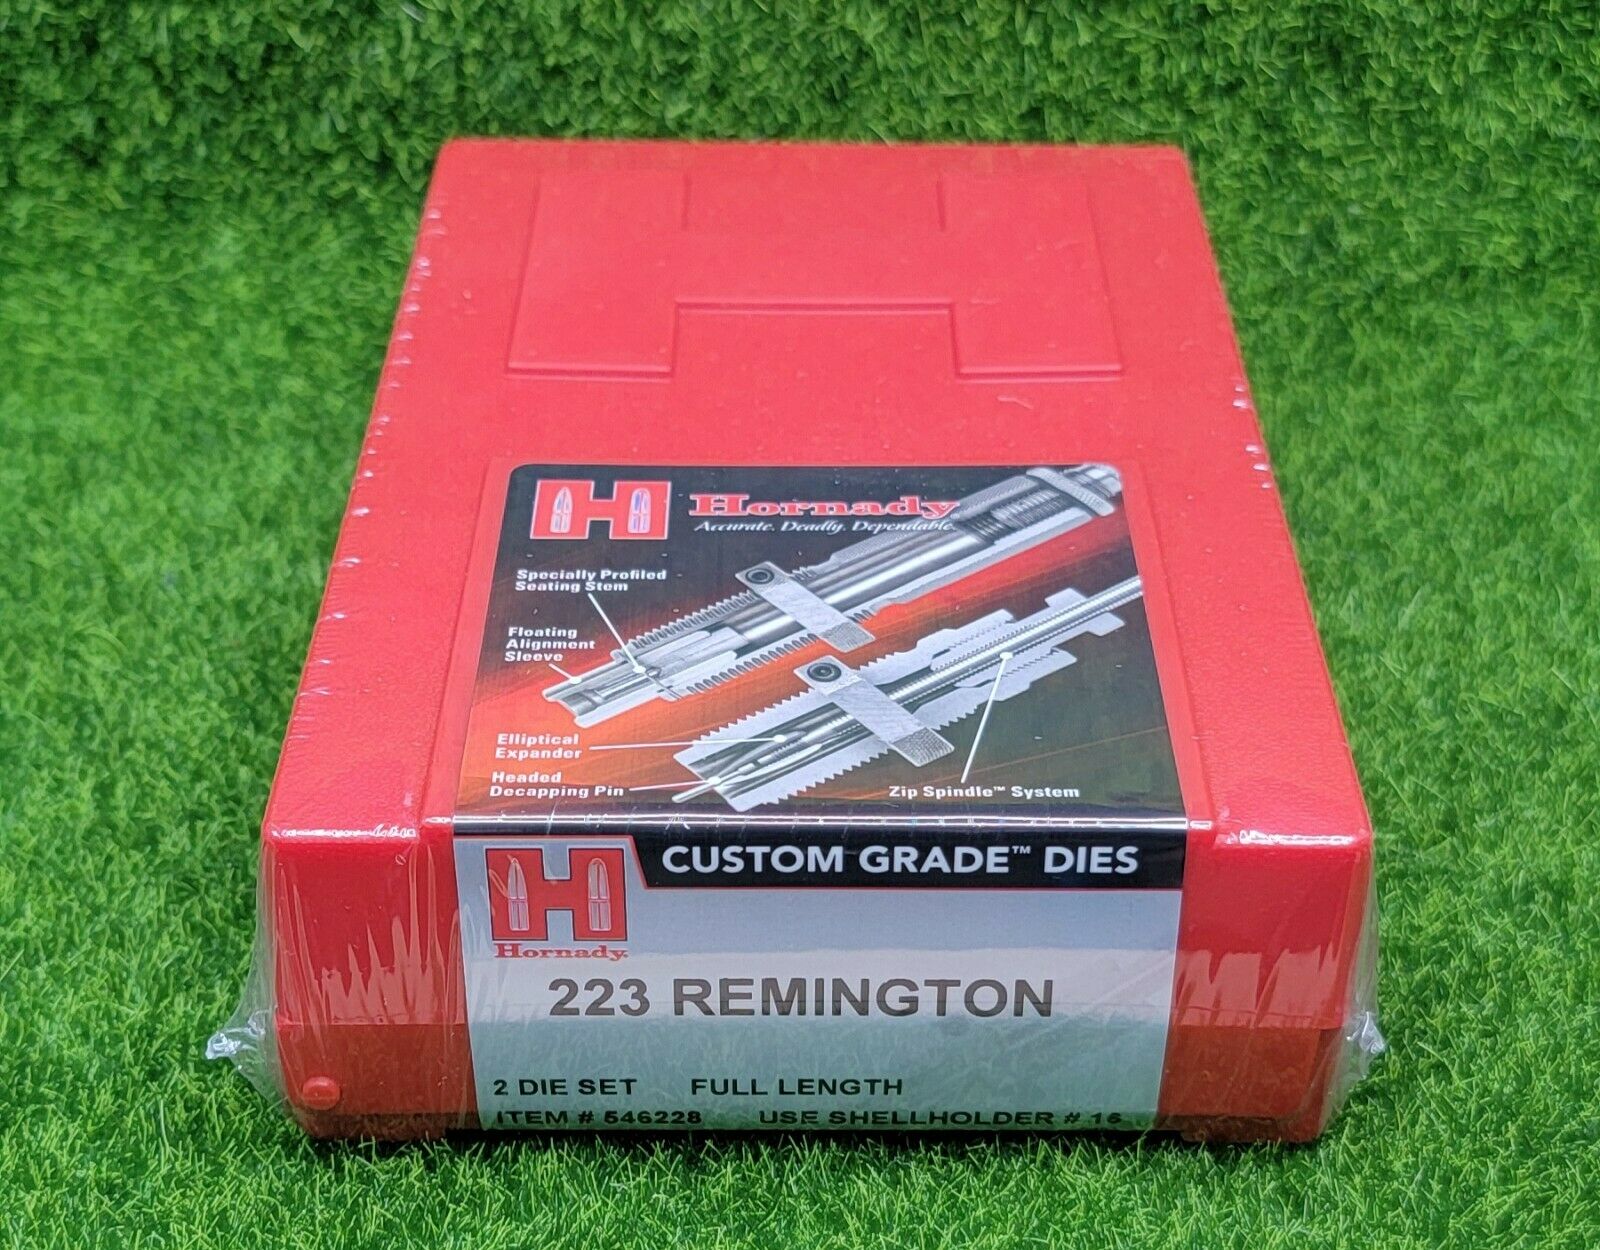 Hornady 223 Remington Custom Grade Reloading 2-Die Set Full Length - 546228